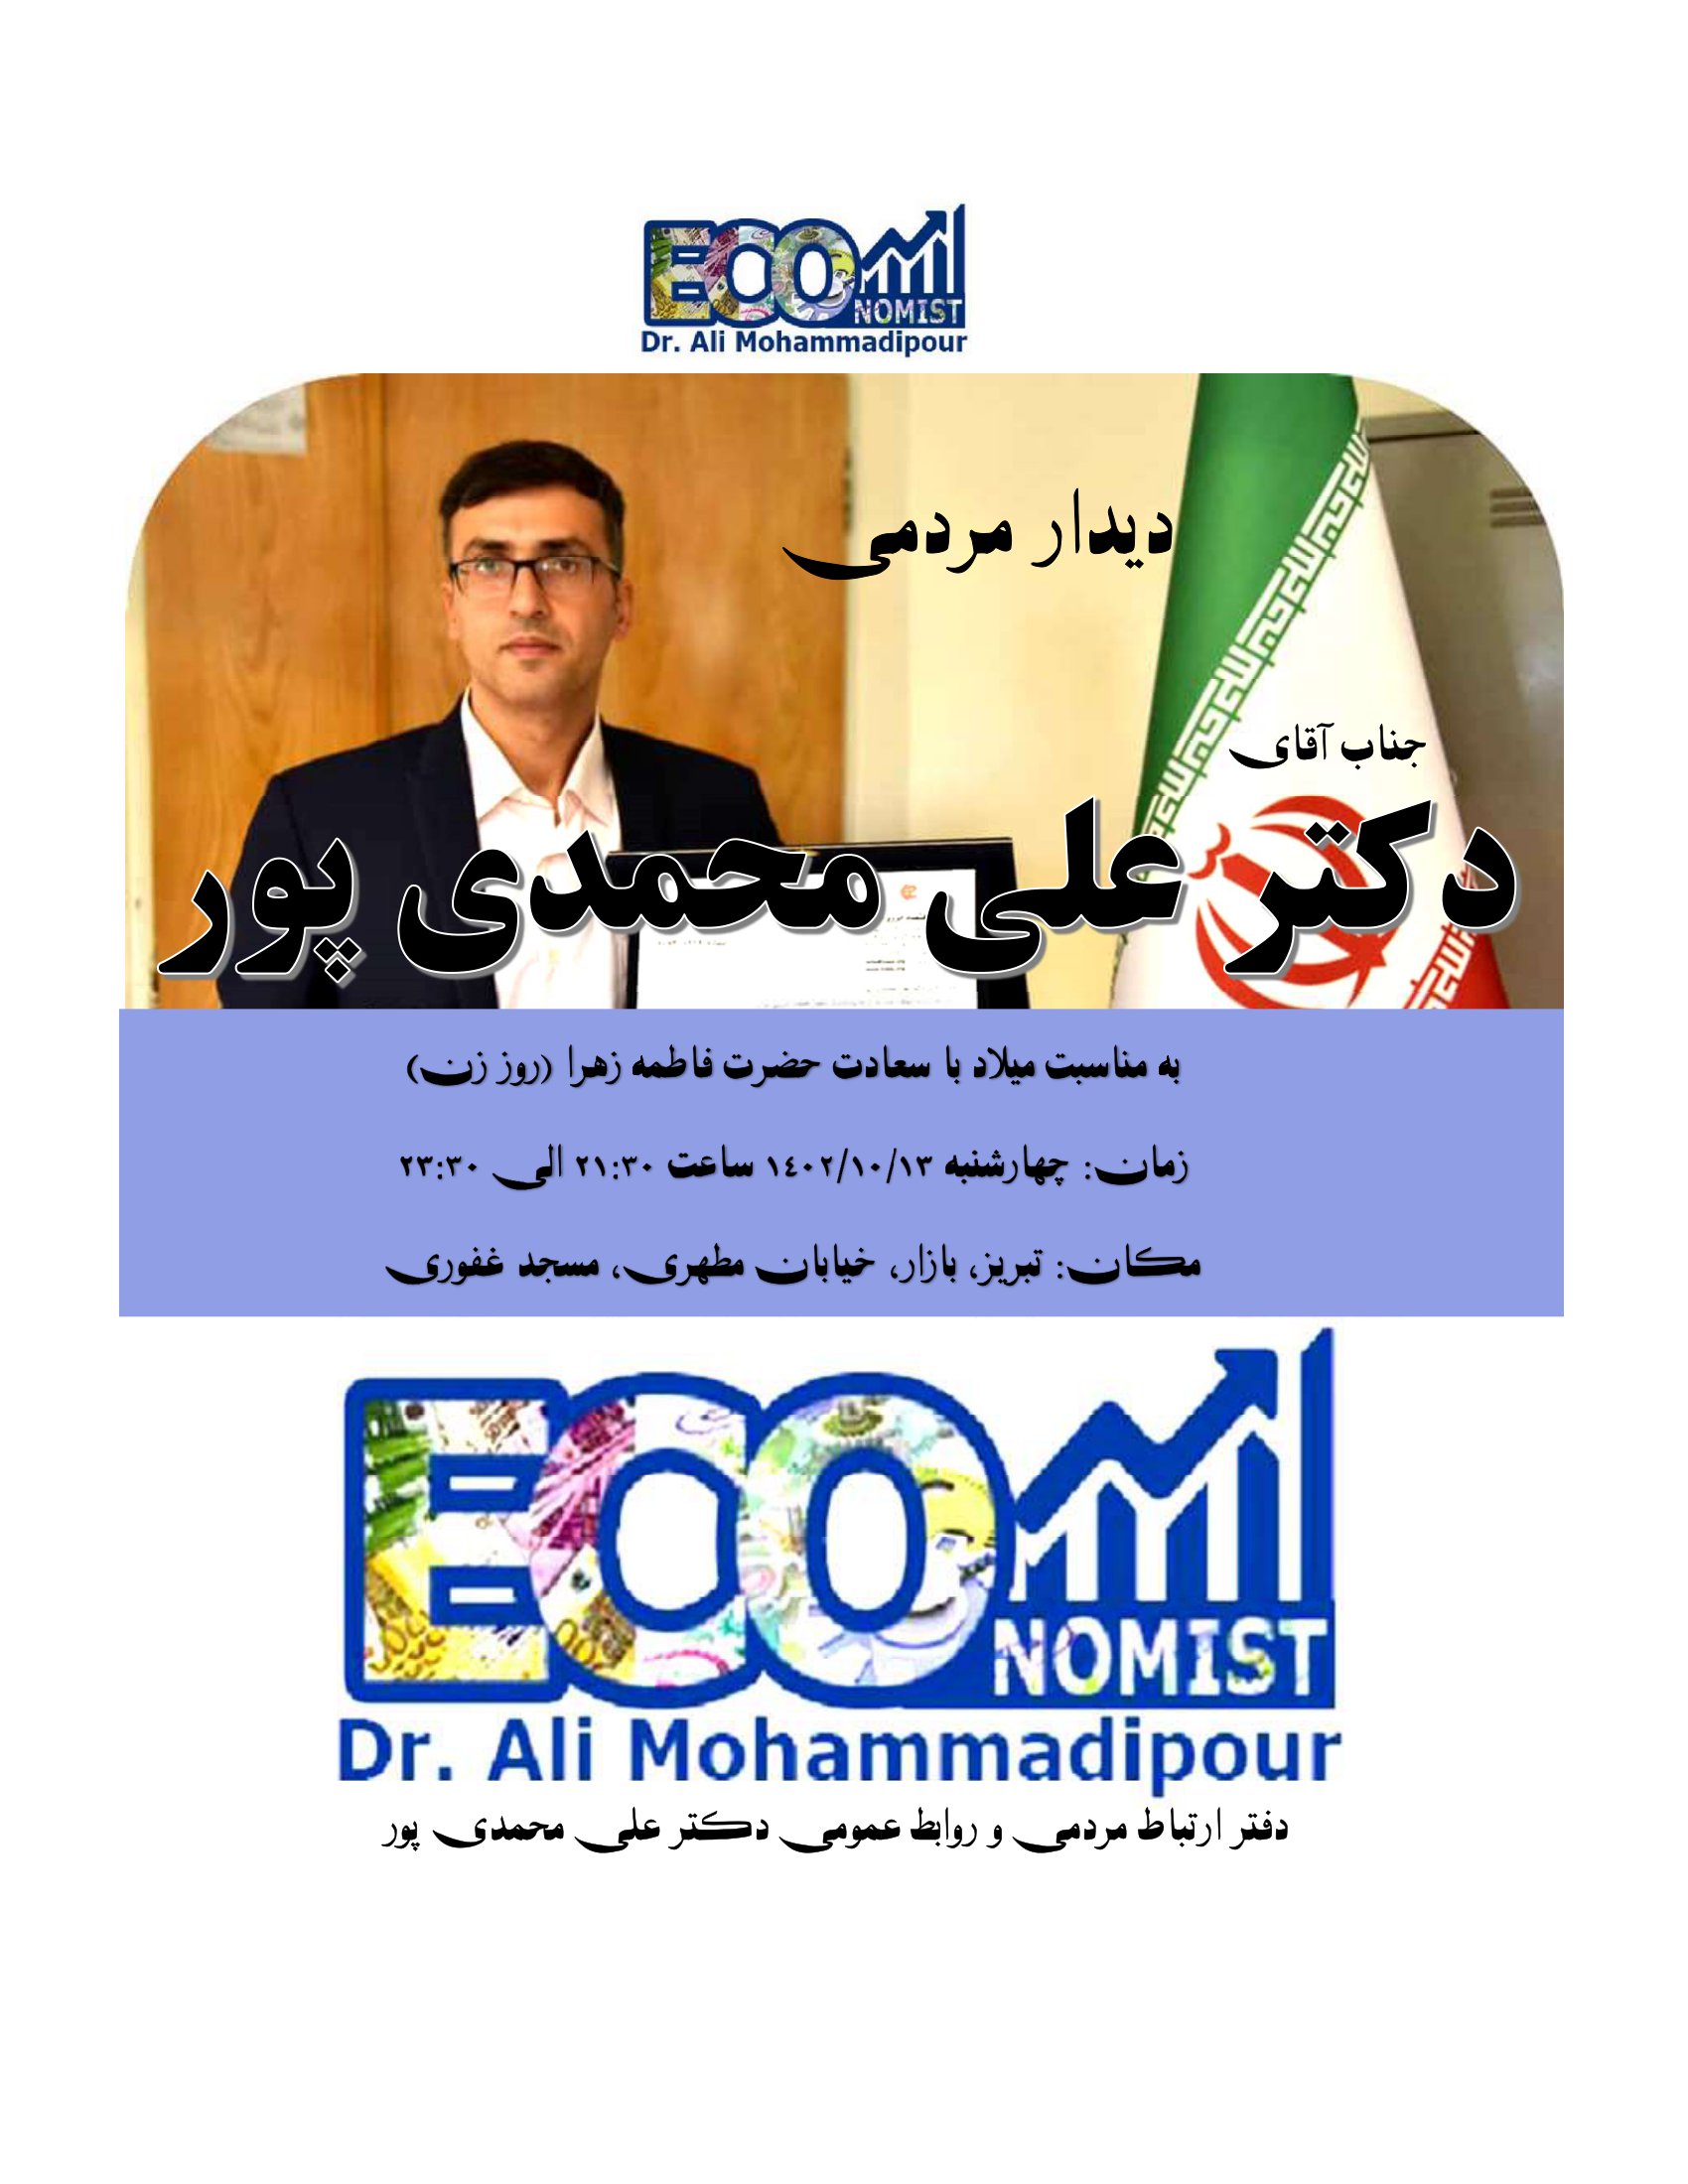 سخنرانی دکتر علی محمدی پور در هیئت عزاداری عرب محله راسته کوچه بمناسبت روز زن